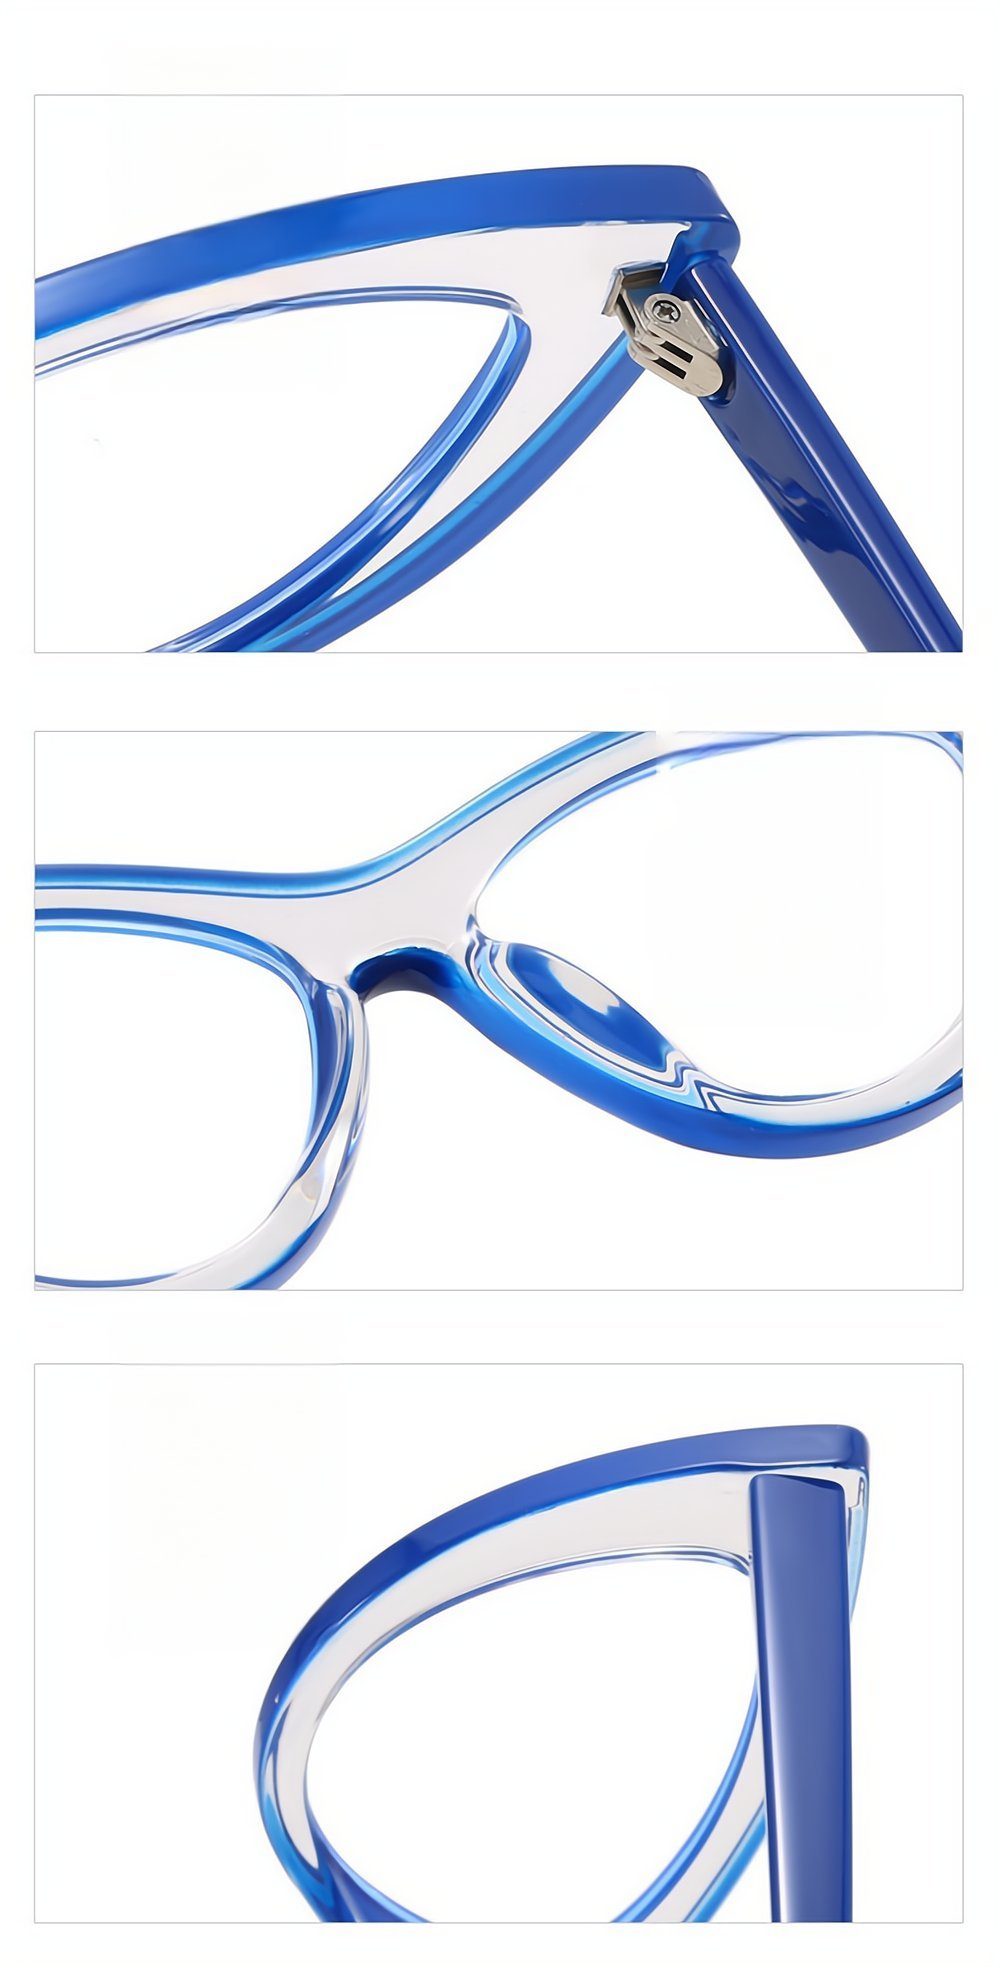 UV Gaming PACIEA Blaulichtfilter EyeTransparente Cat Anti-Müdigkeit Schutz gelb Brille